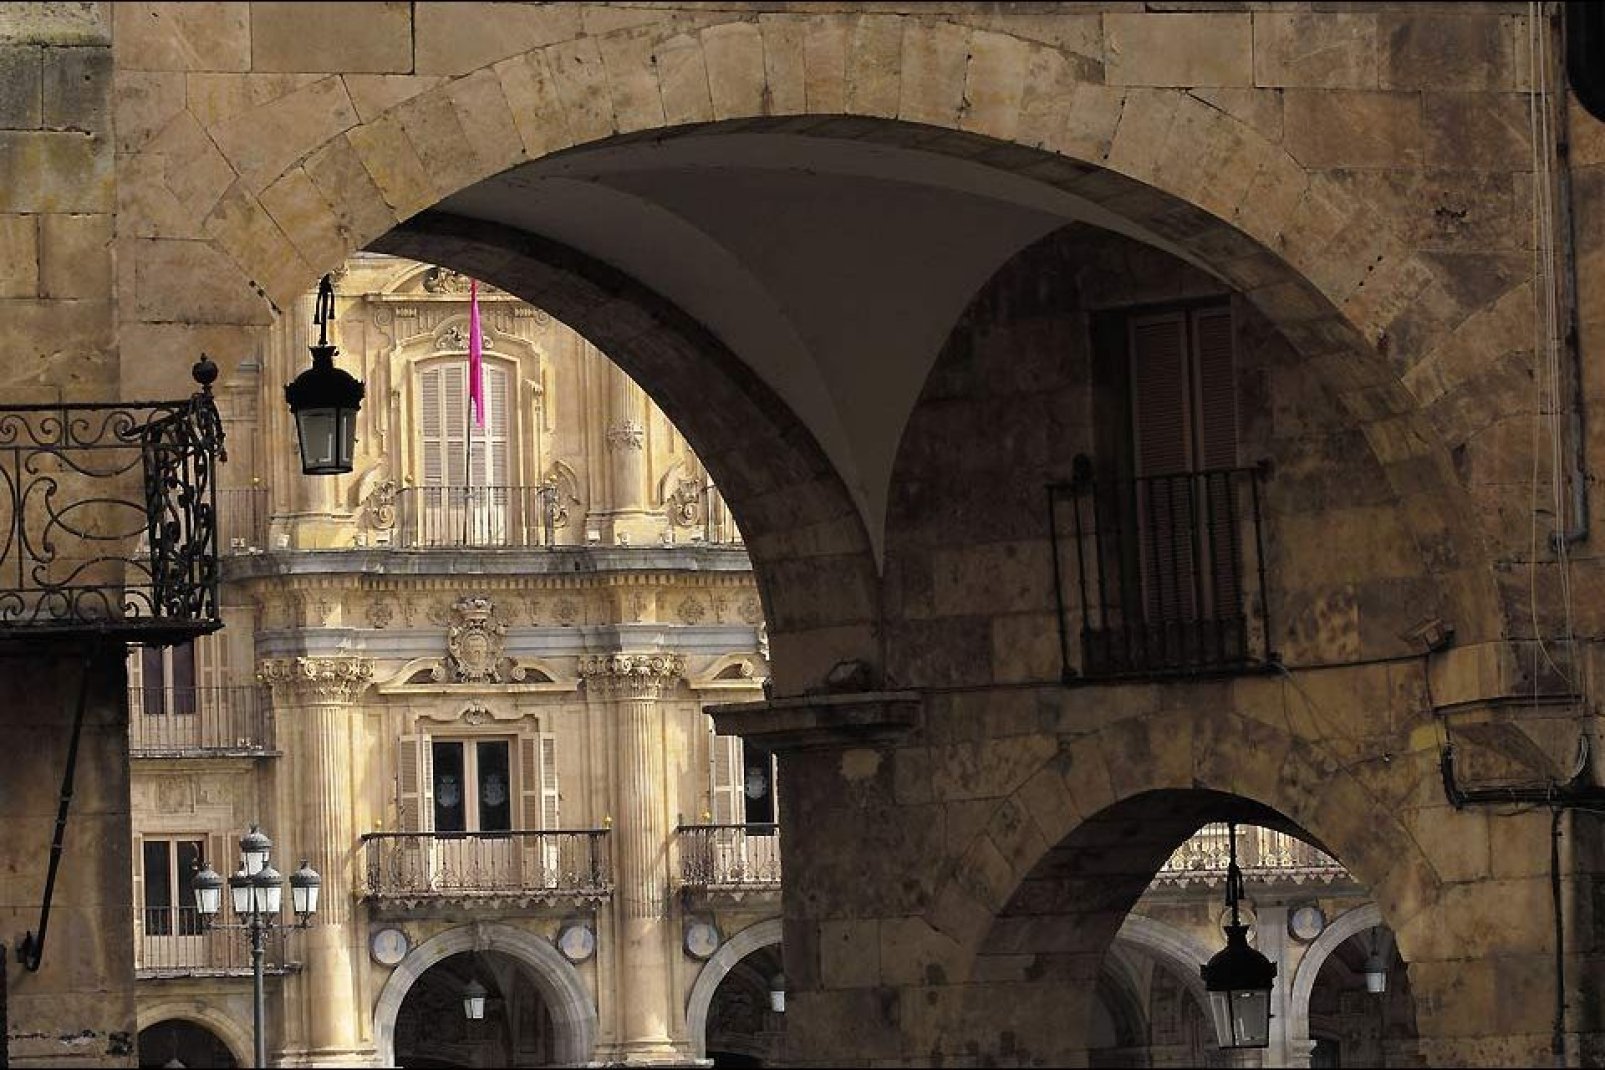 Der Platz wurde im 18. Jahrhundert von Philipp V von Spanien angelegt, um sich für die Treue der Stadt im Zuge der spanischen Erbfolgekriege zu bedanken.